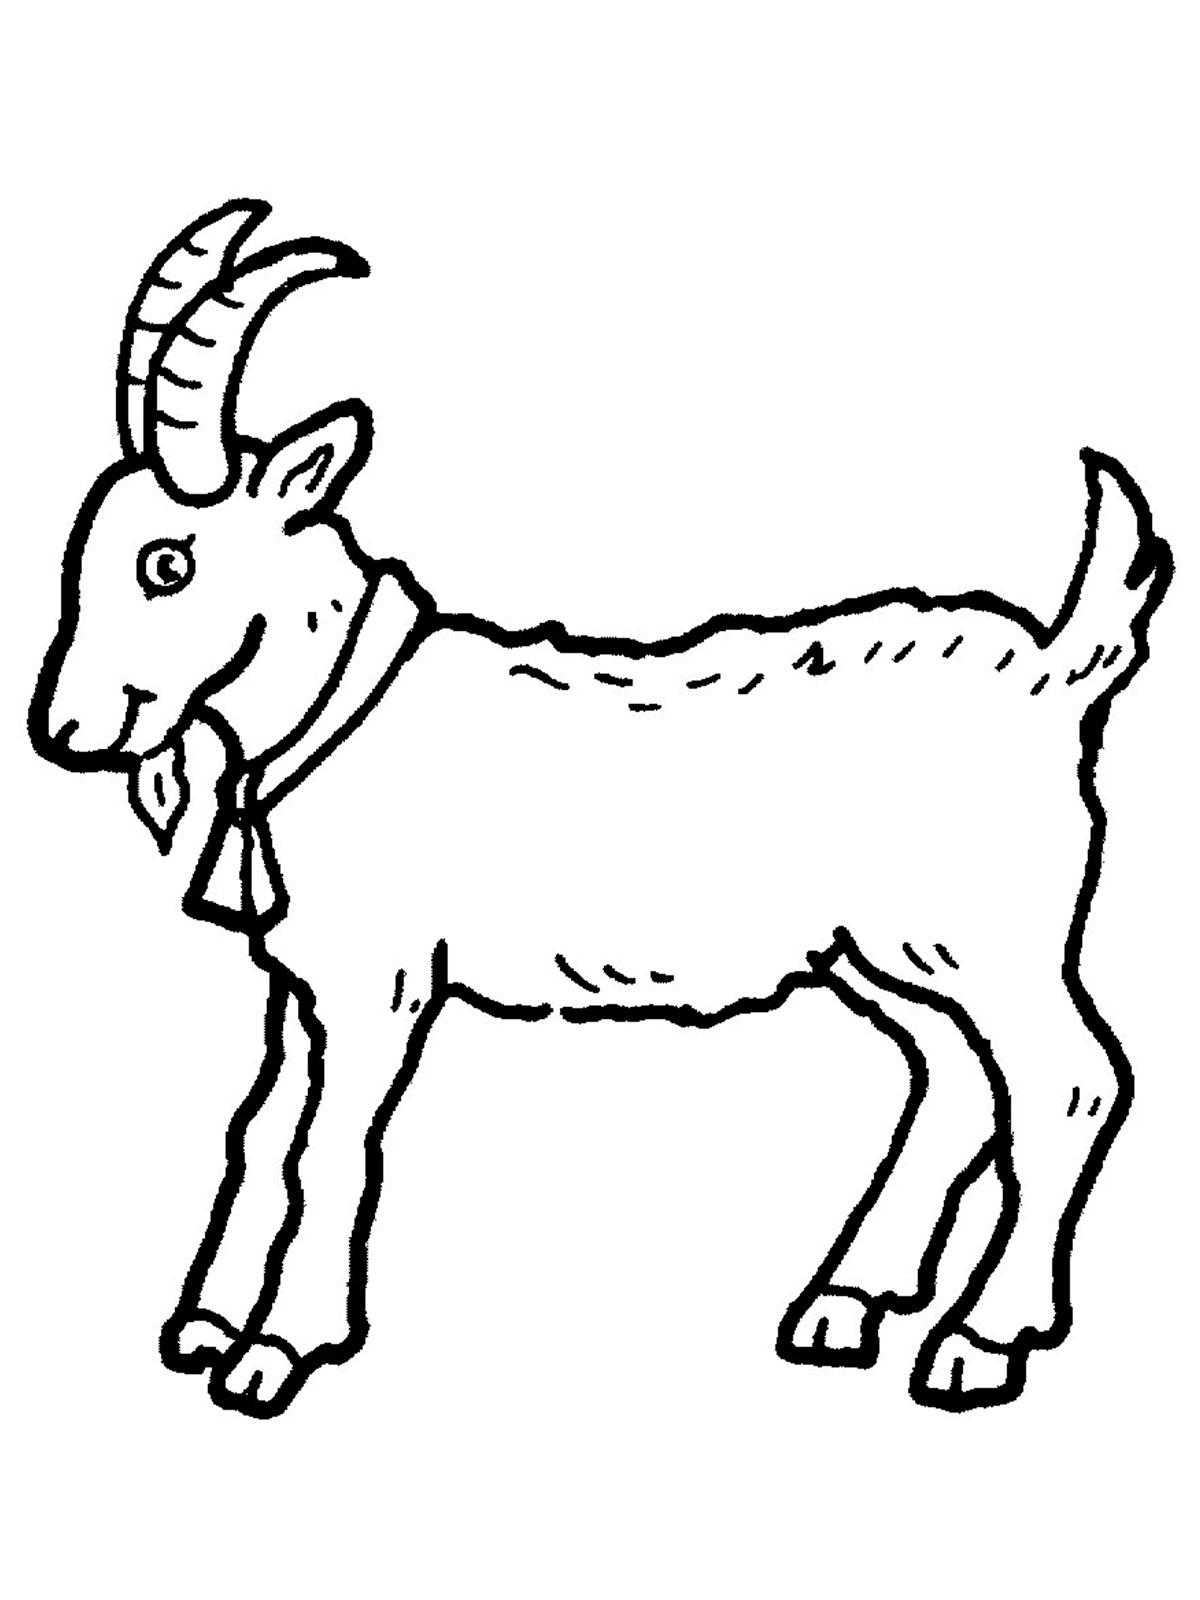 Картинка-раскраска для детей 4-5 лет животные козел, барашек, свинка, индюшка распечатать